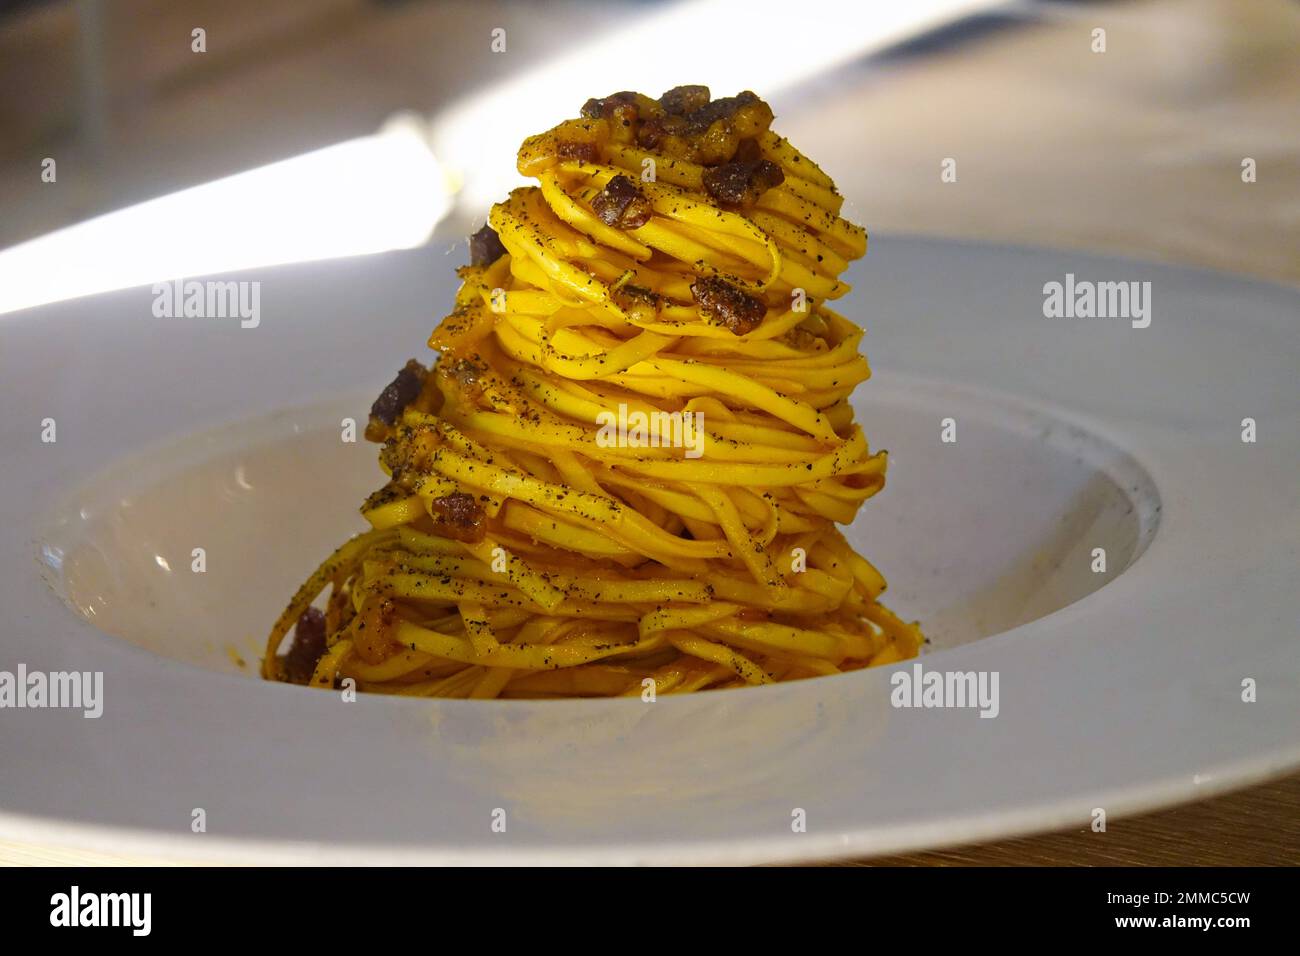 Gericht mit Spaghetti Carbonara, ein typisch italienisches Nudelrezept mit Guanciale, Ei und Pecorino romano Stockfoto